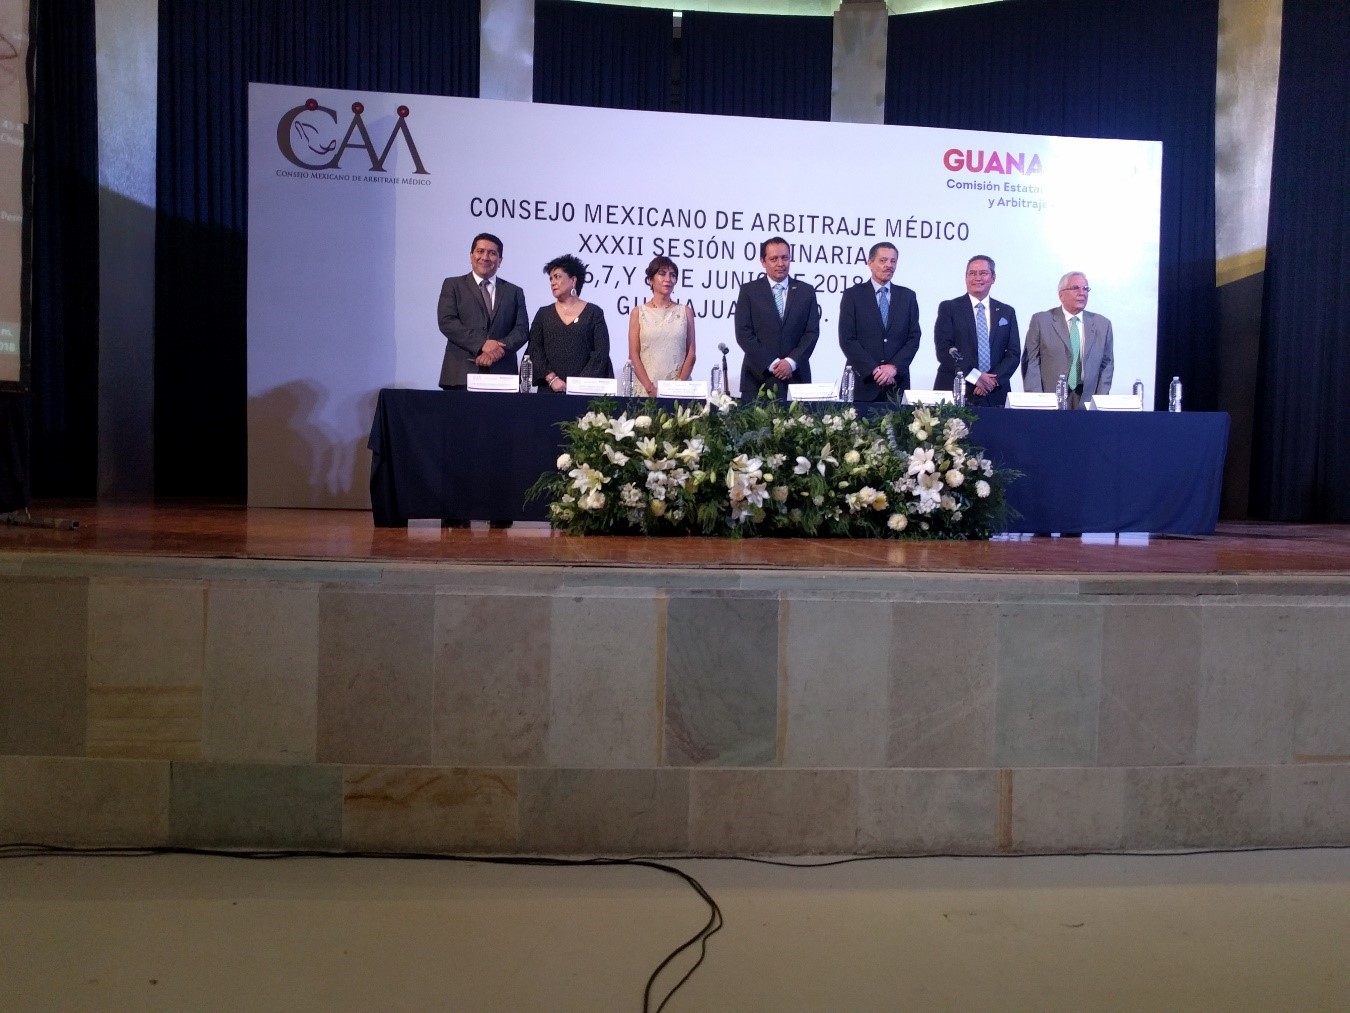 Autoridades durante la XXXII Sesión Ordinaria del Consejo Mexicano de Arbitraje Médico en Guanajuato, Guanajuato.